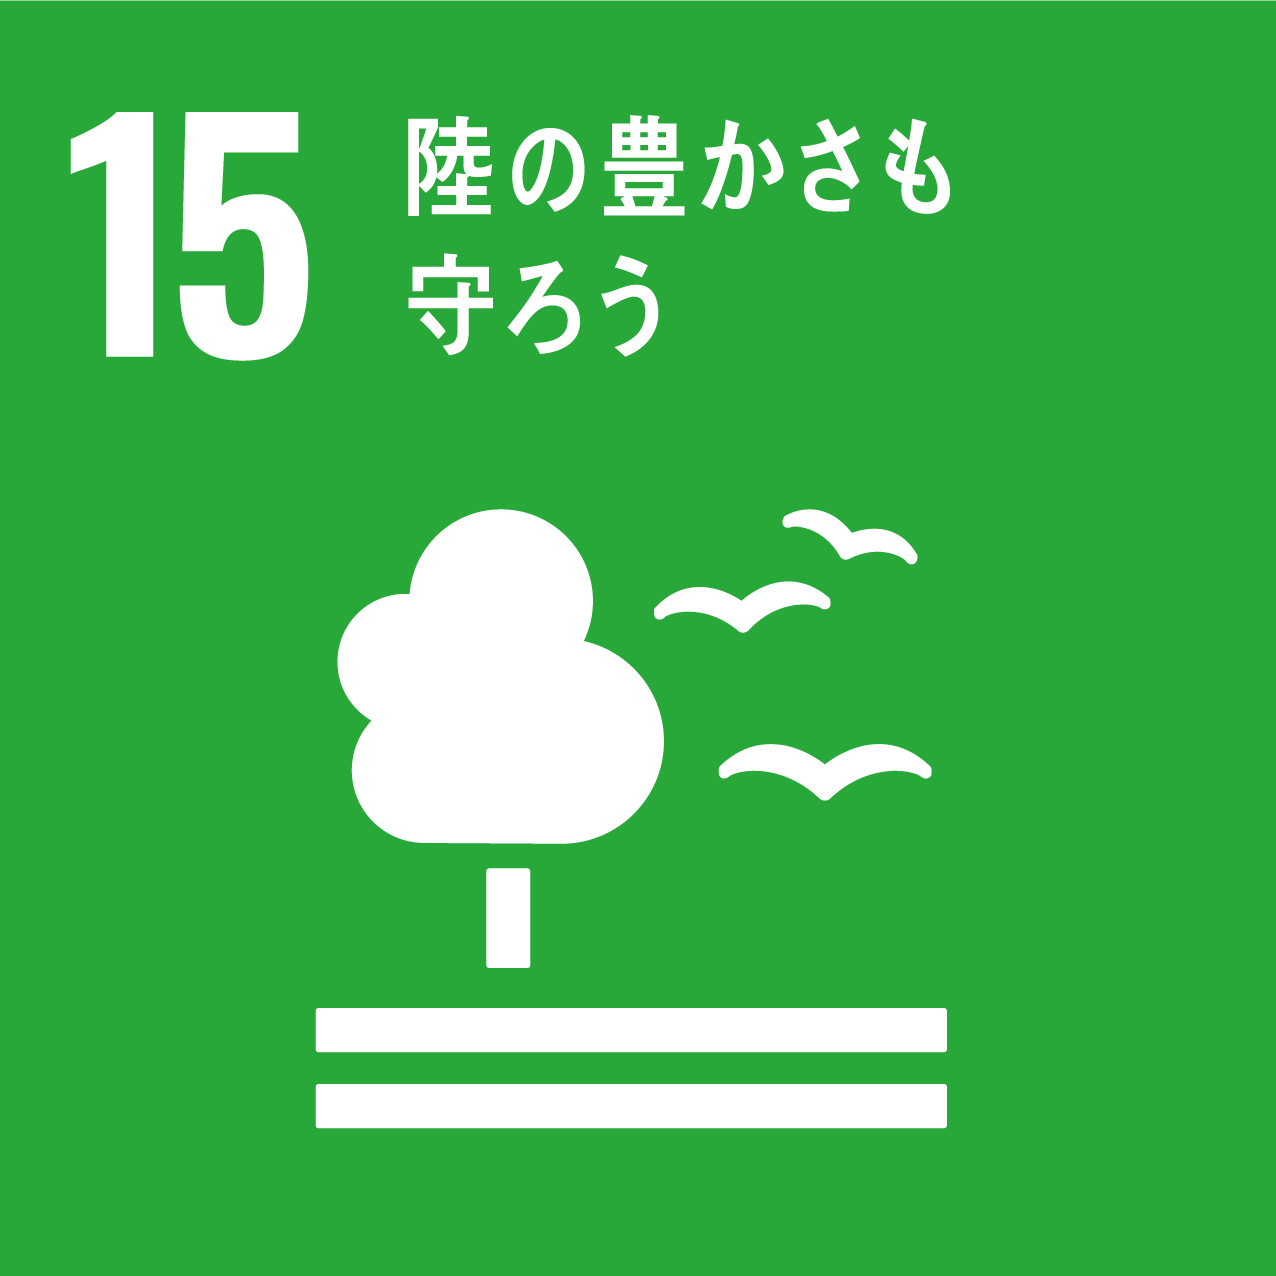 日南町と日南町産業振興センターが目指す、SDGs15のロゴ